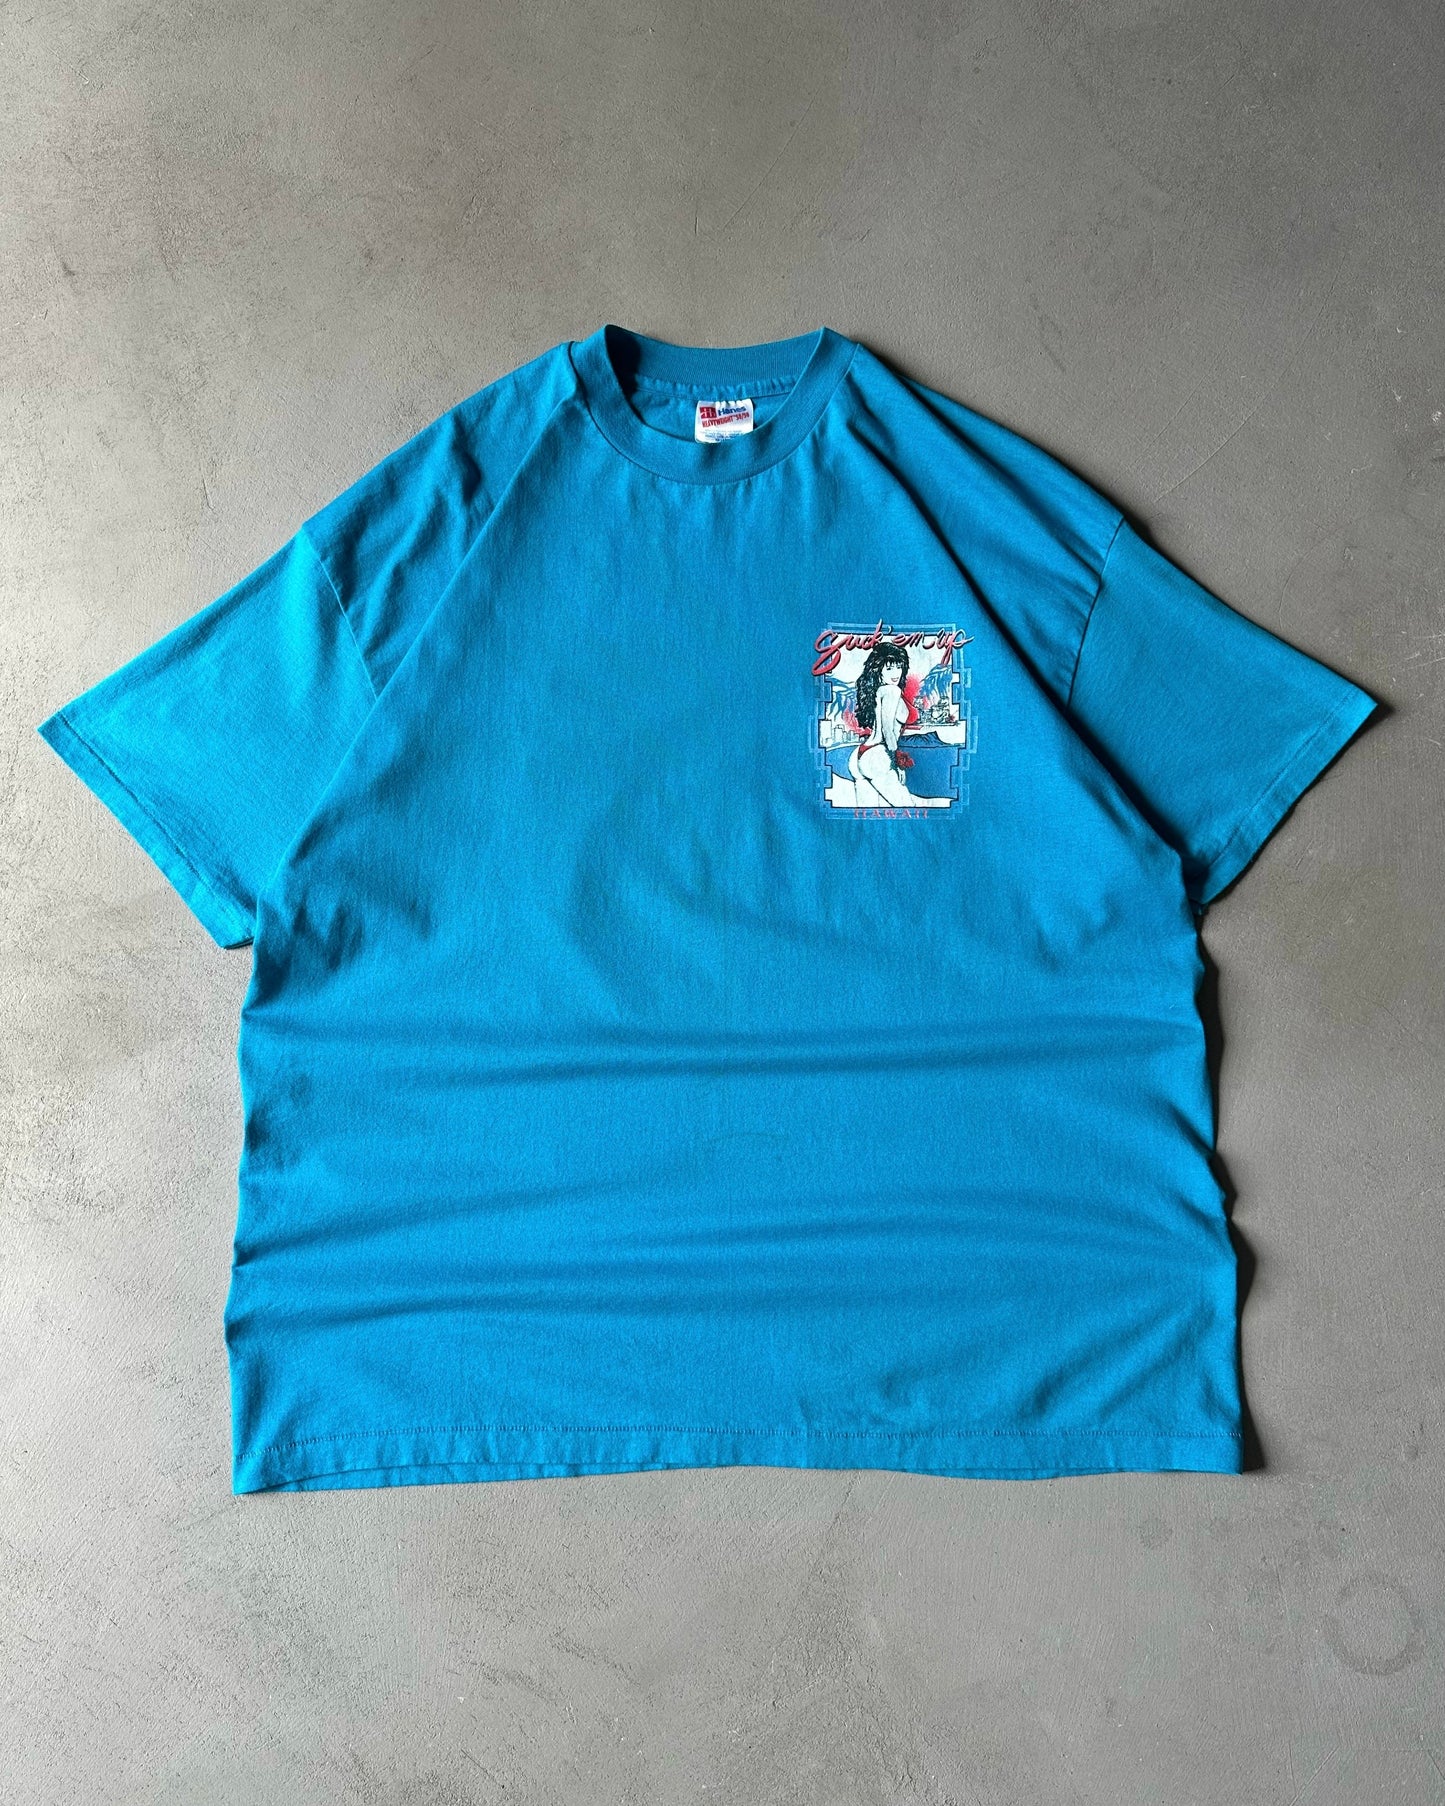 1990s - Blue "Suck'em Up" T-Shirt - XL/XXL